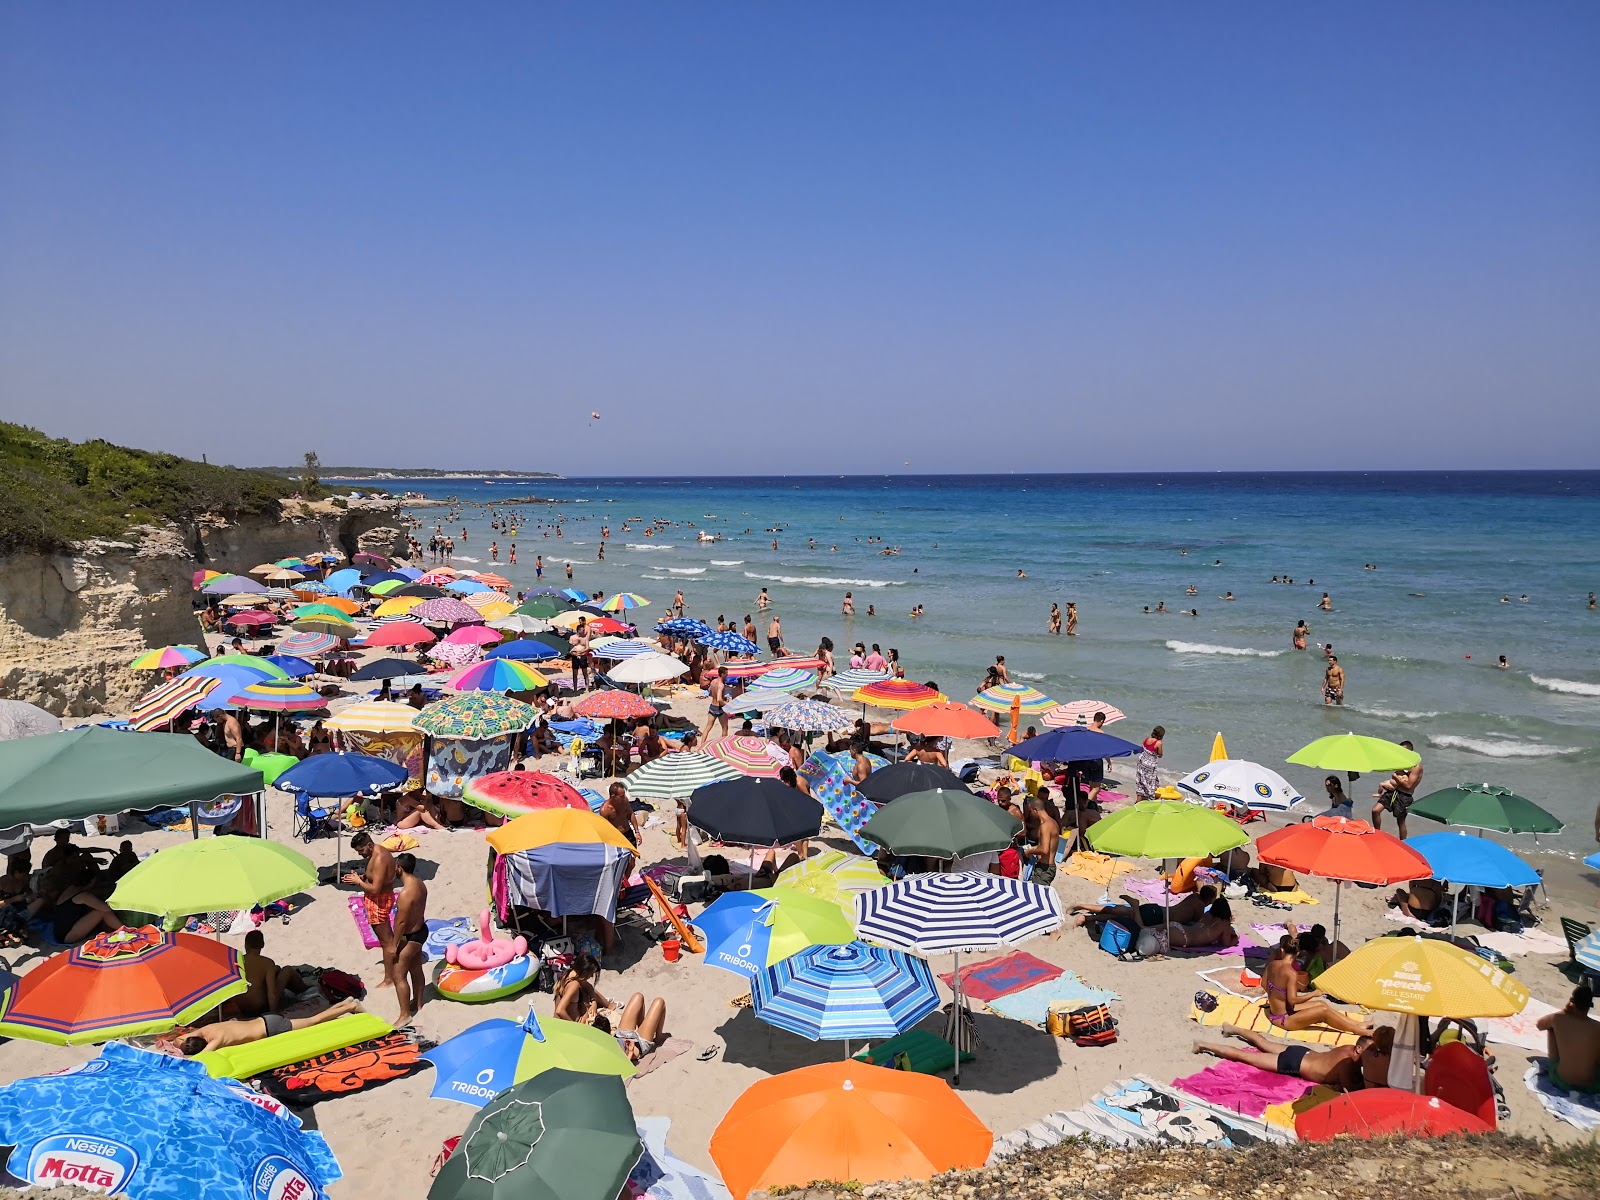 Photo of Spiaggia Baia dei Turchi located in natural area